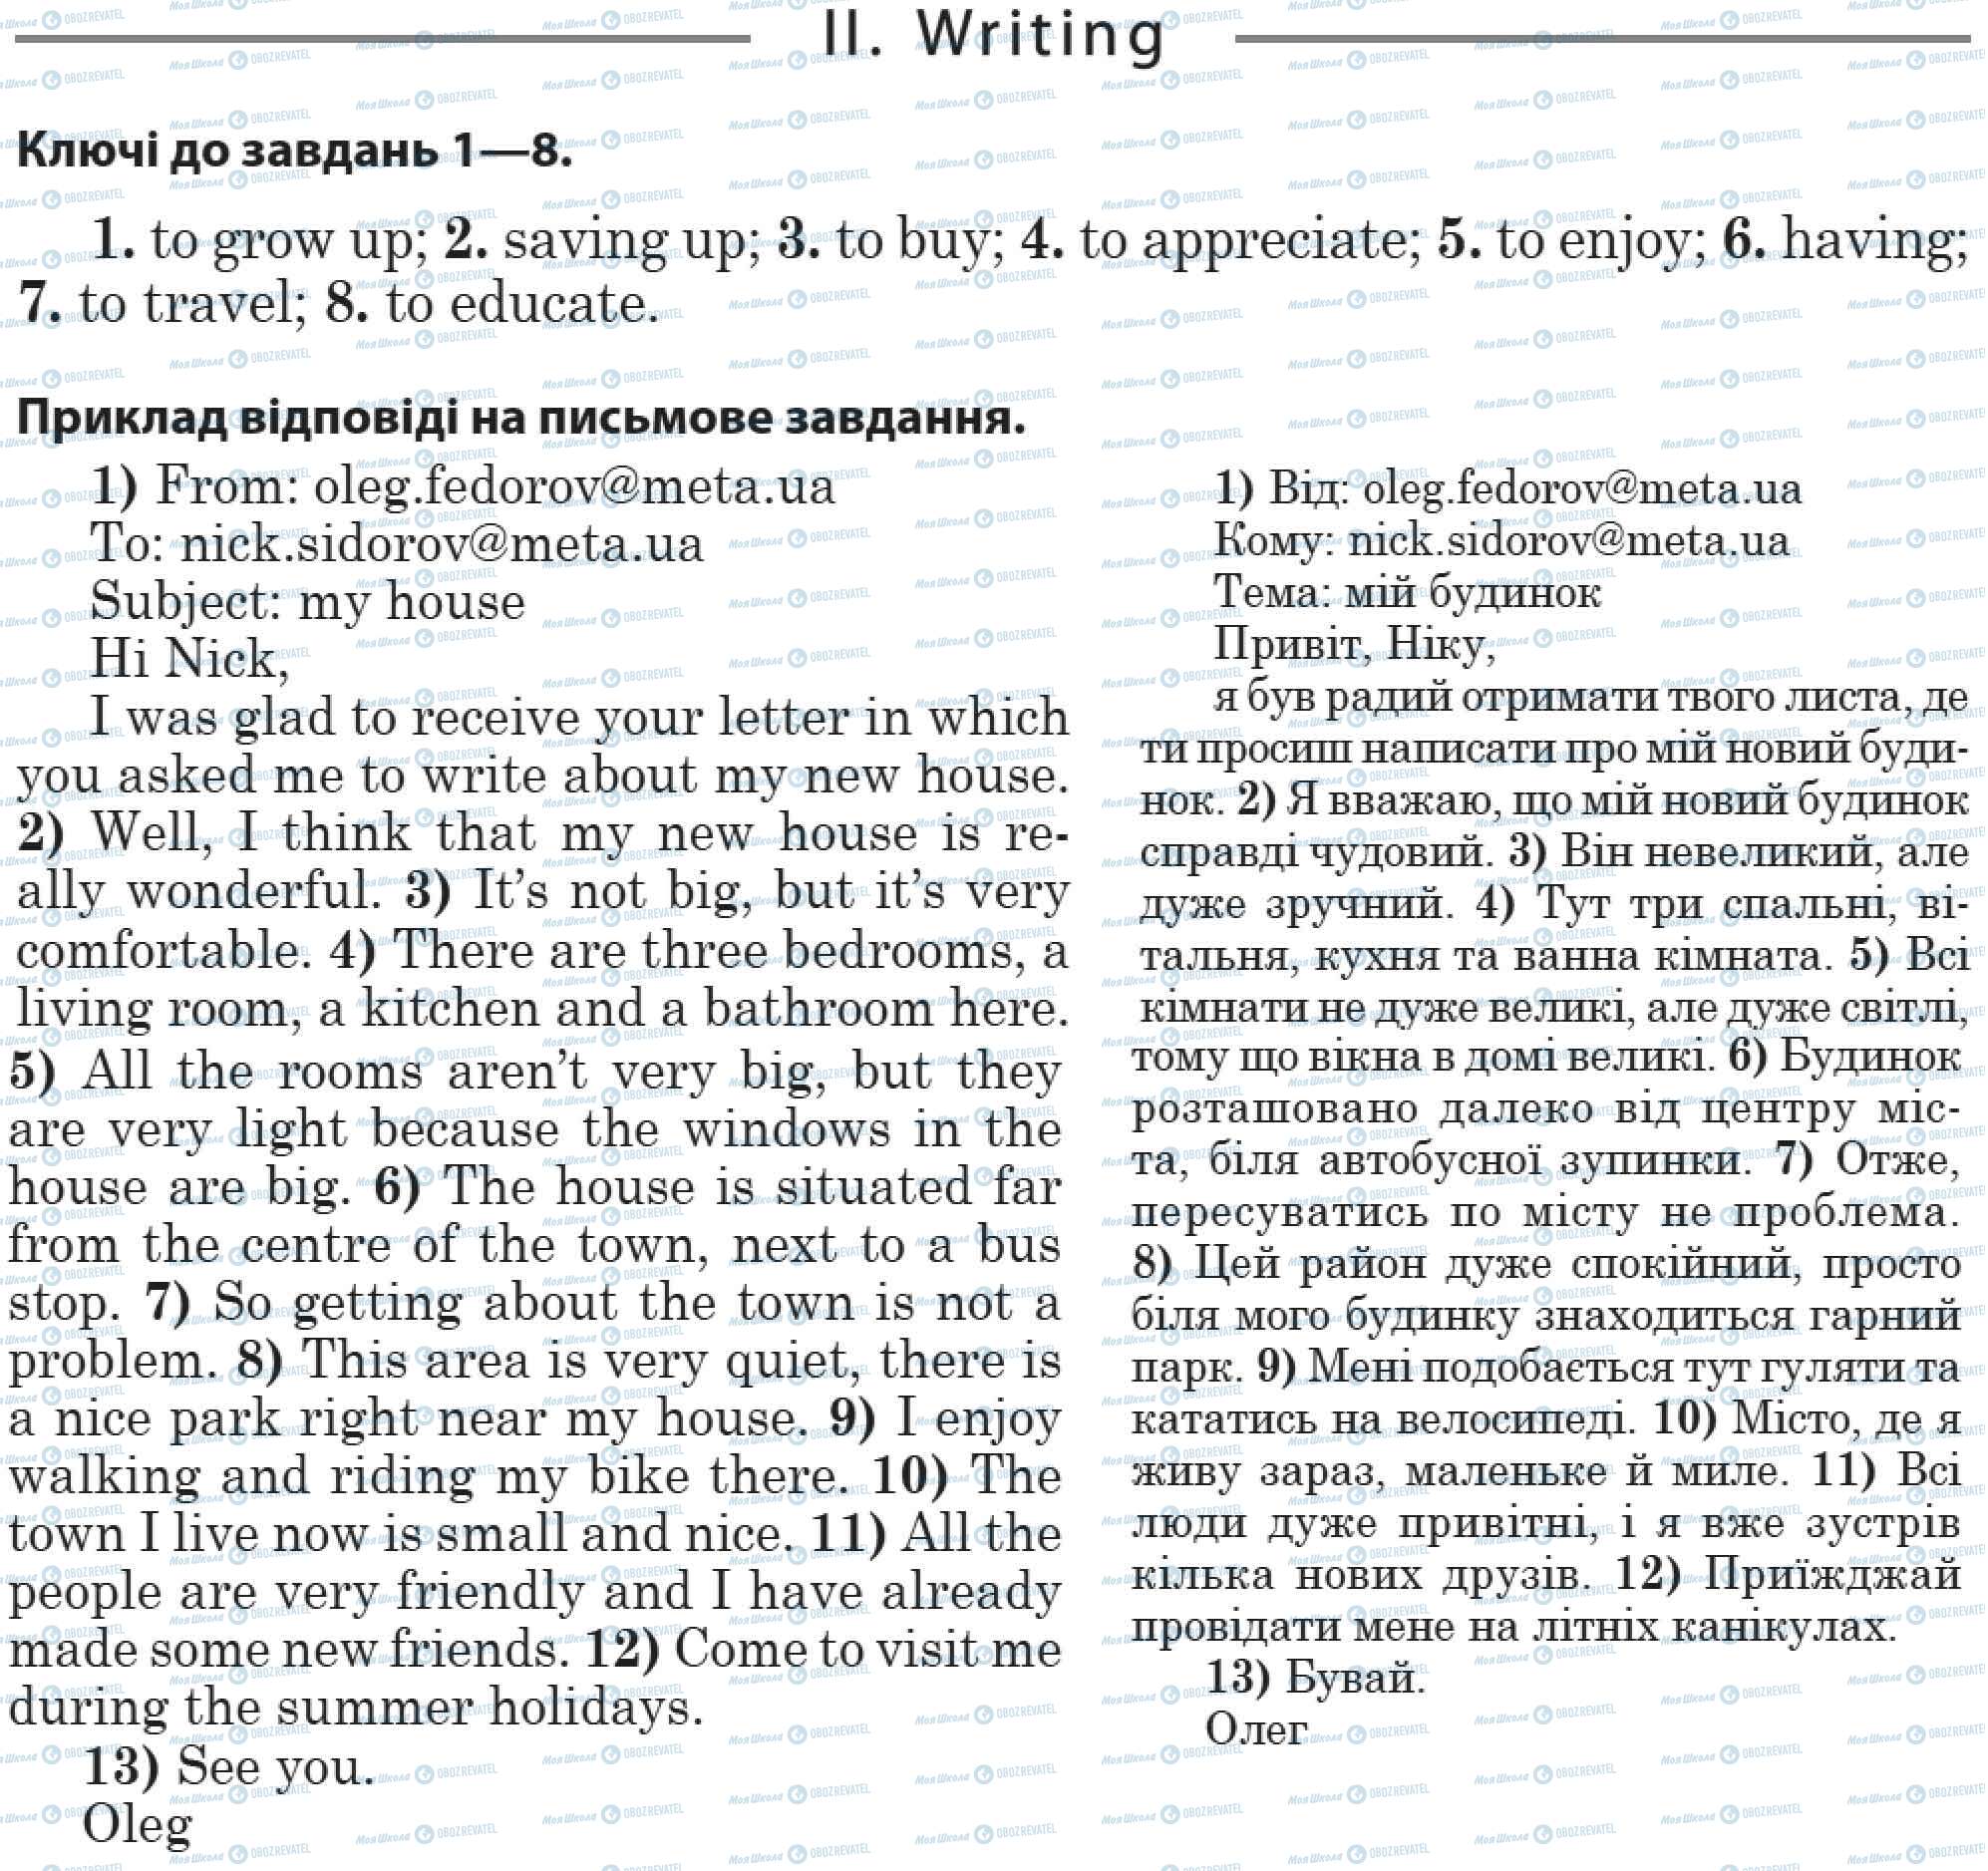 ДПА Английский язык 11 класс страница 2. Writing